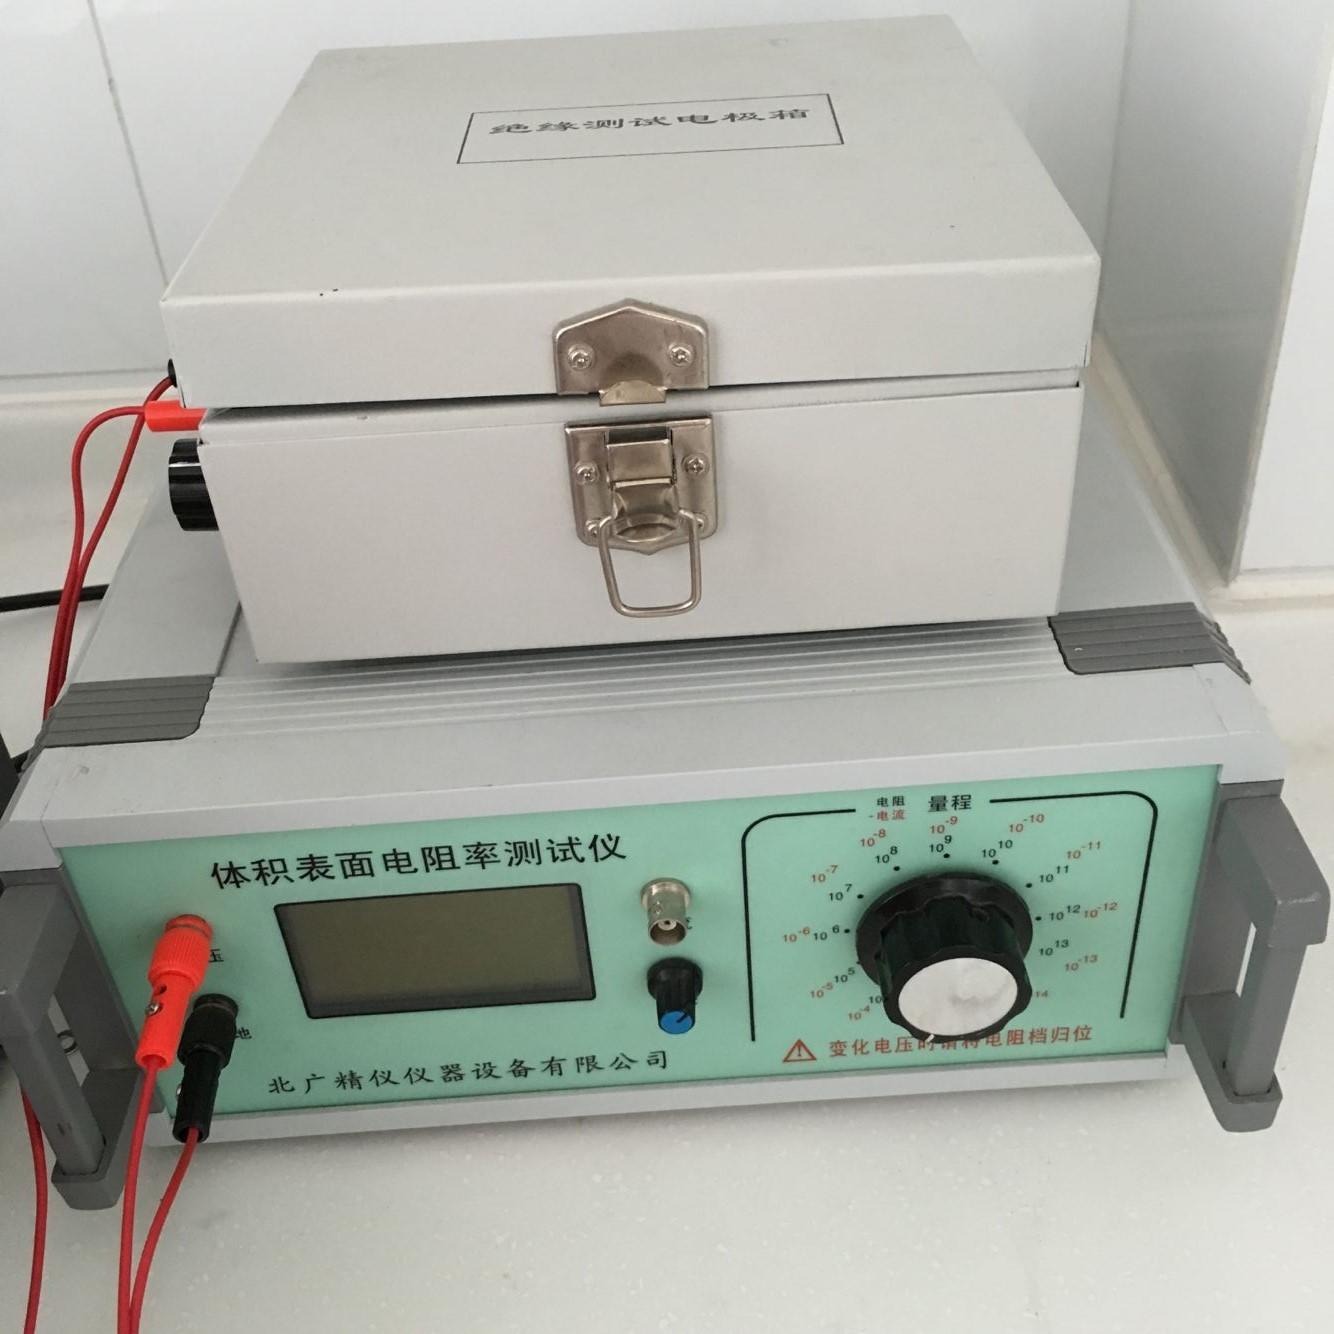 电阻率测试仪  BEST-121体积表面积电阻率测试仪北广精仪